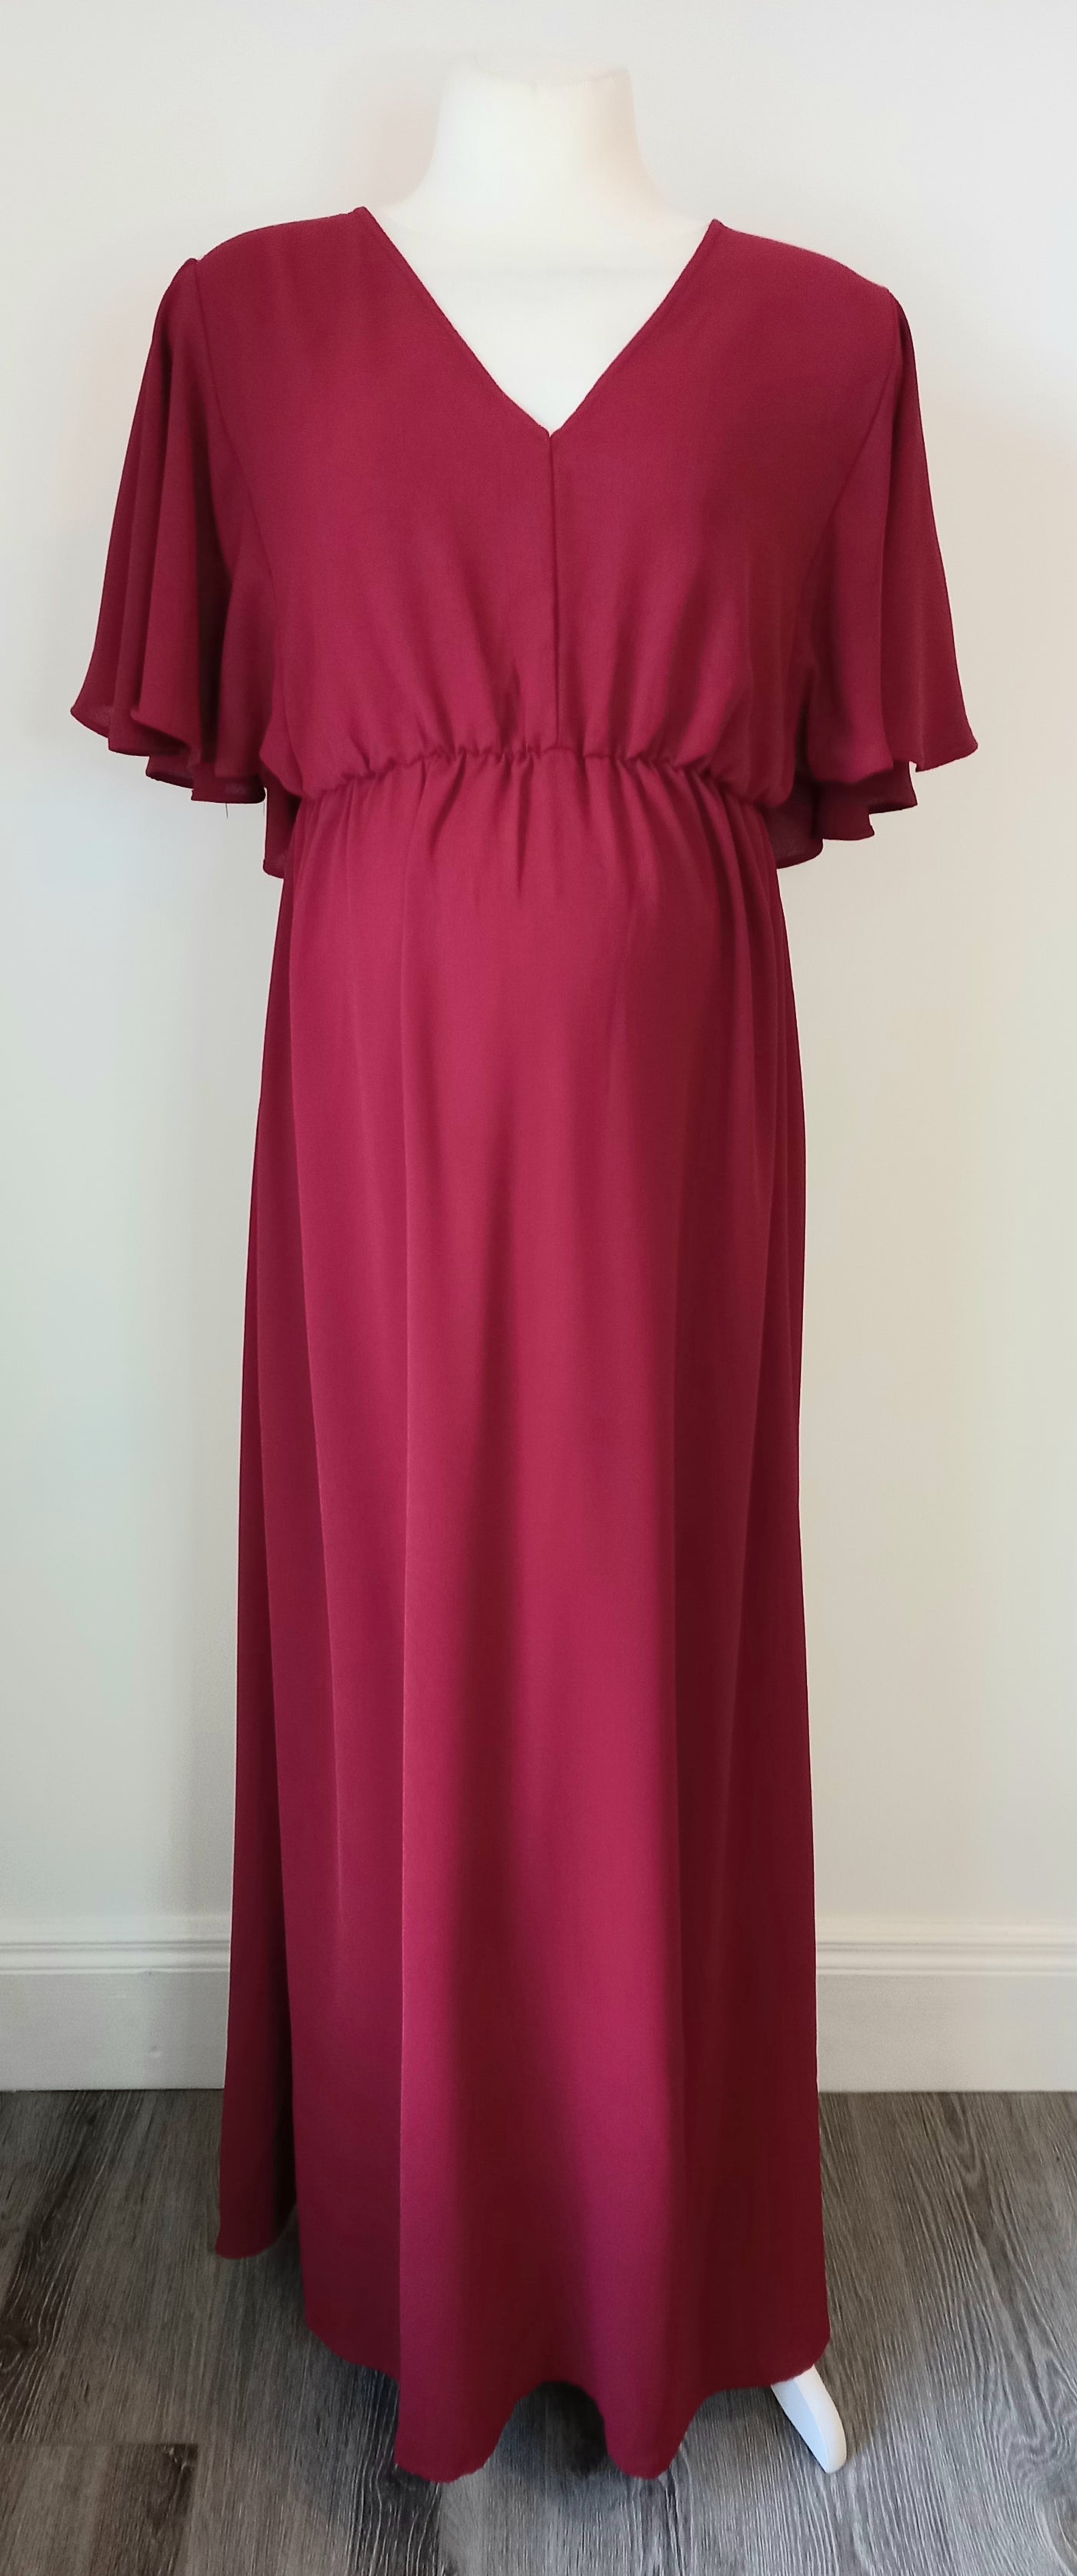 Shein Red Maxi Dress - Size XXL (Approx UK 14/16)